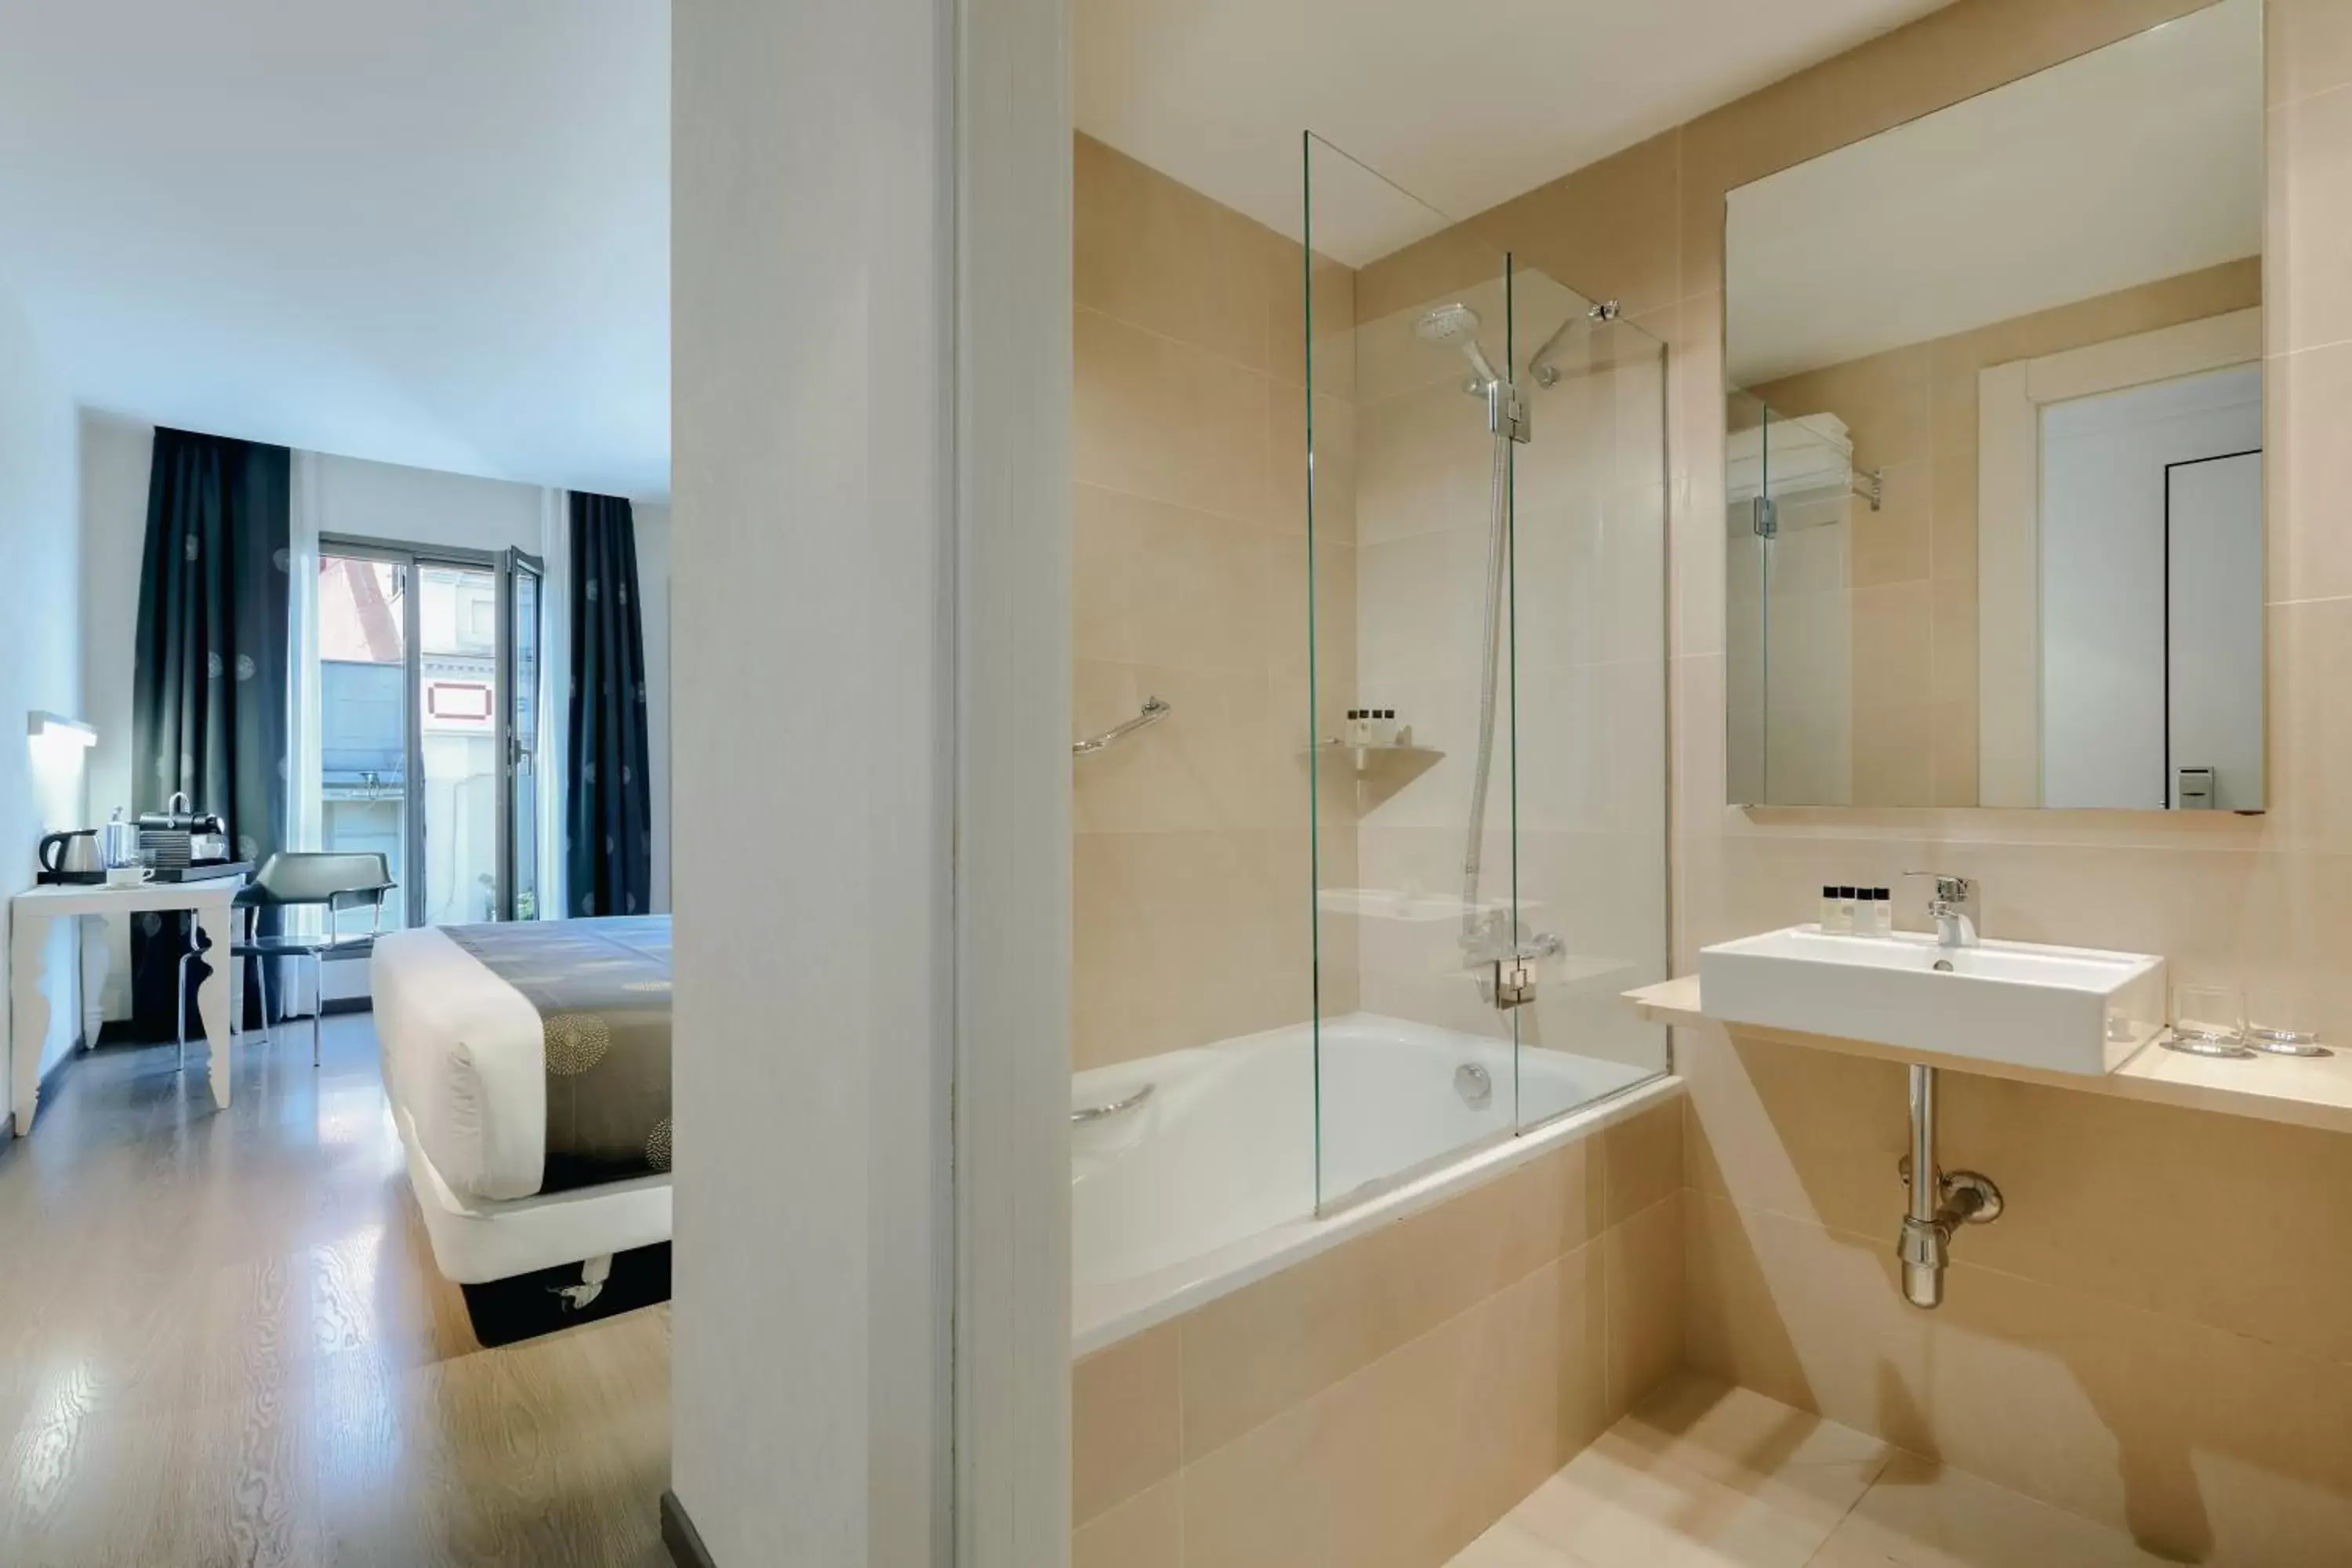 Bathroom in RAMBLAS HOTEL powered by Vincci Hoteles